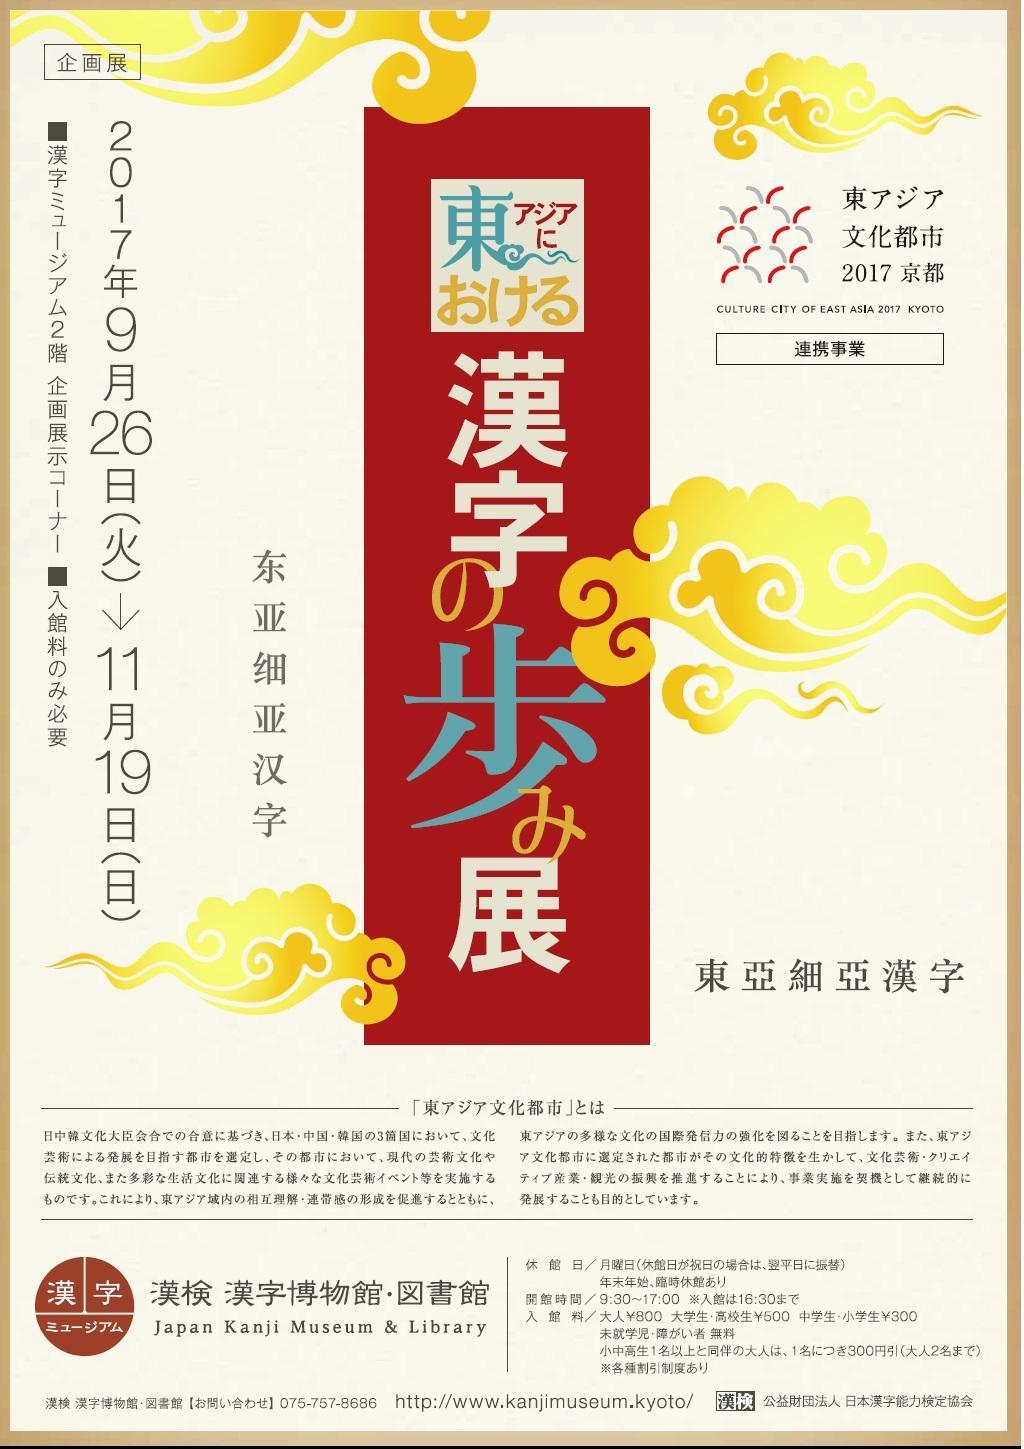 東アジアにおける 漢字の歩み展 企画展示 漢検 漢字博物館 図書館 漢字ミュージアム